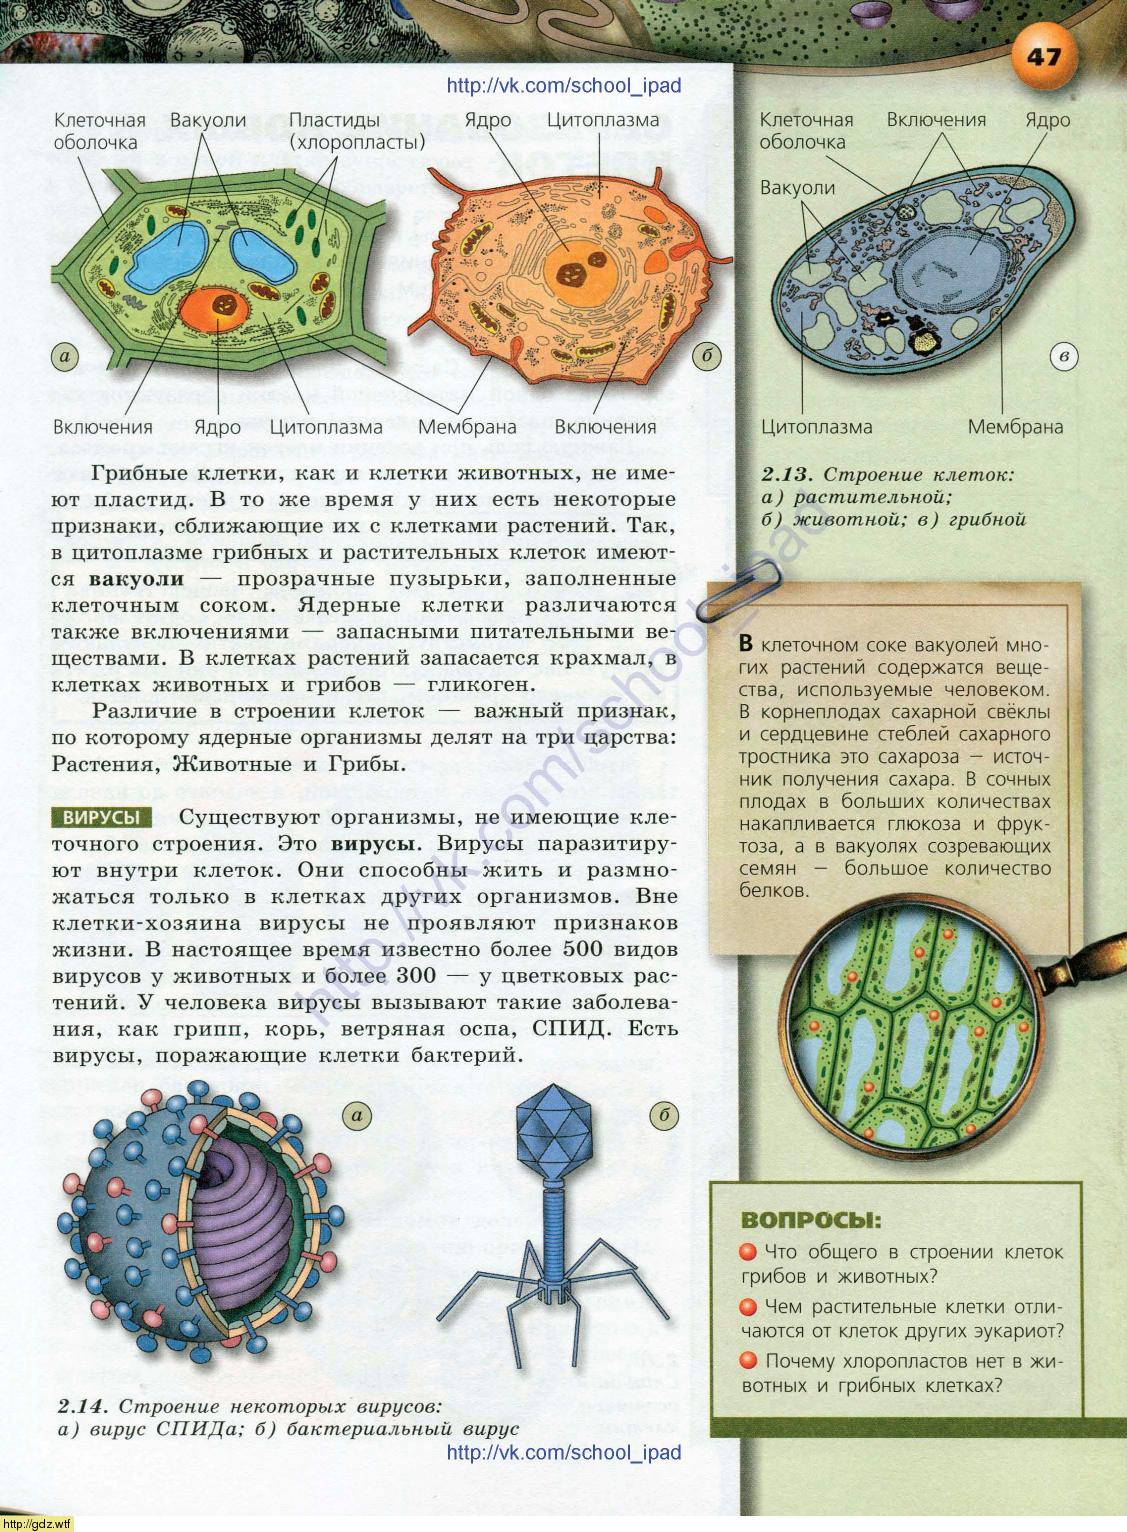 Учебник по биологии 10 класс растительная клетка